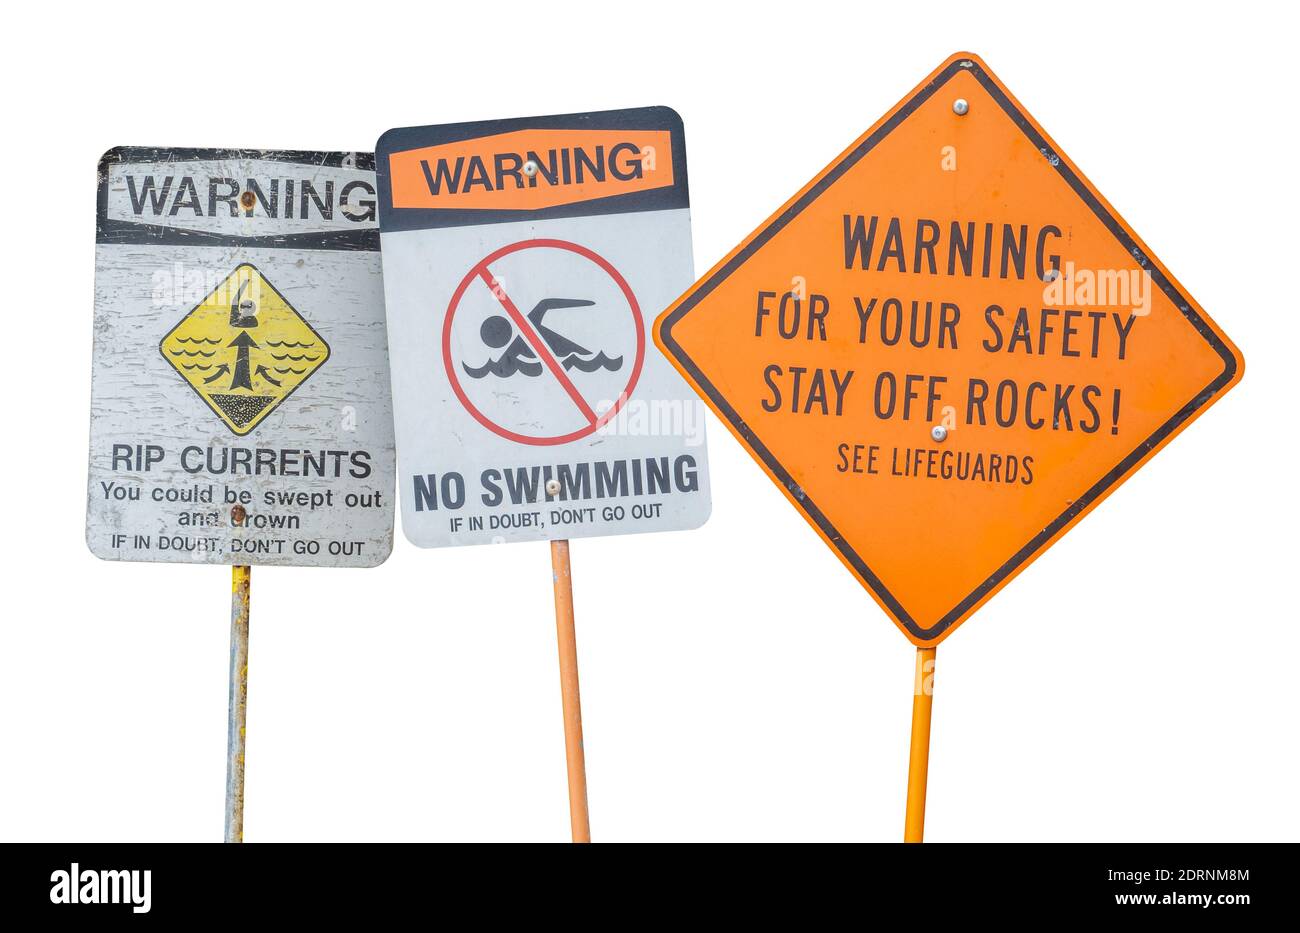 Una collezione di segnali di allarme per la sicurezza dell'acqua, visti in una spiaggia, in un lago o in un fiume, isolati su uno sfondo bianco Foto Stock